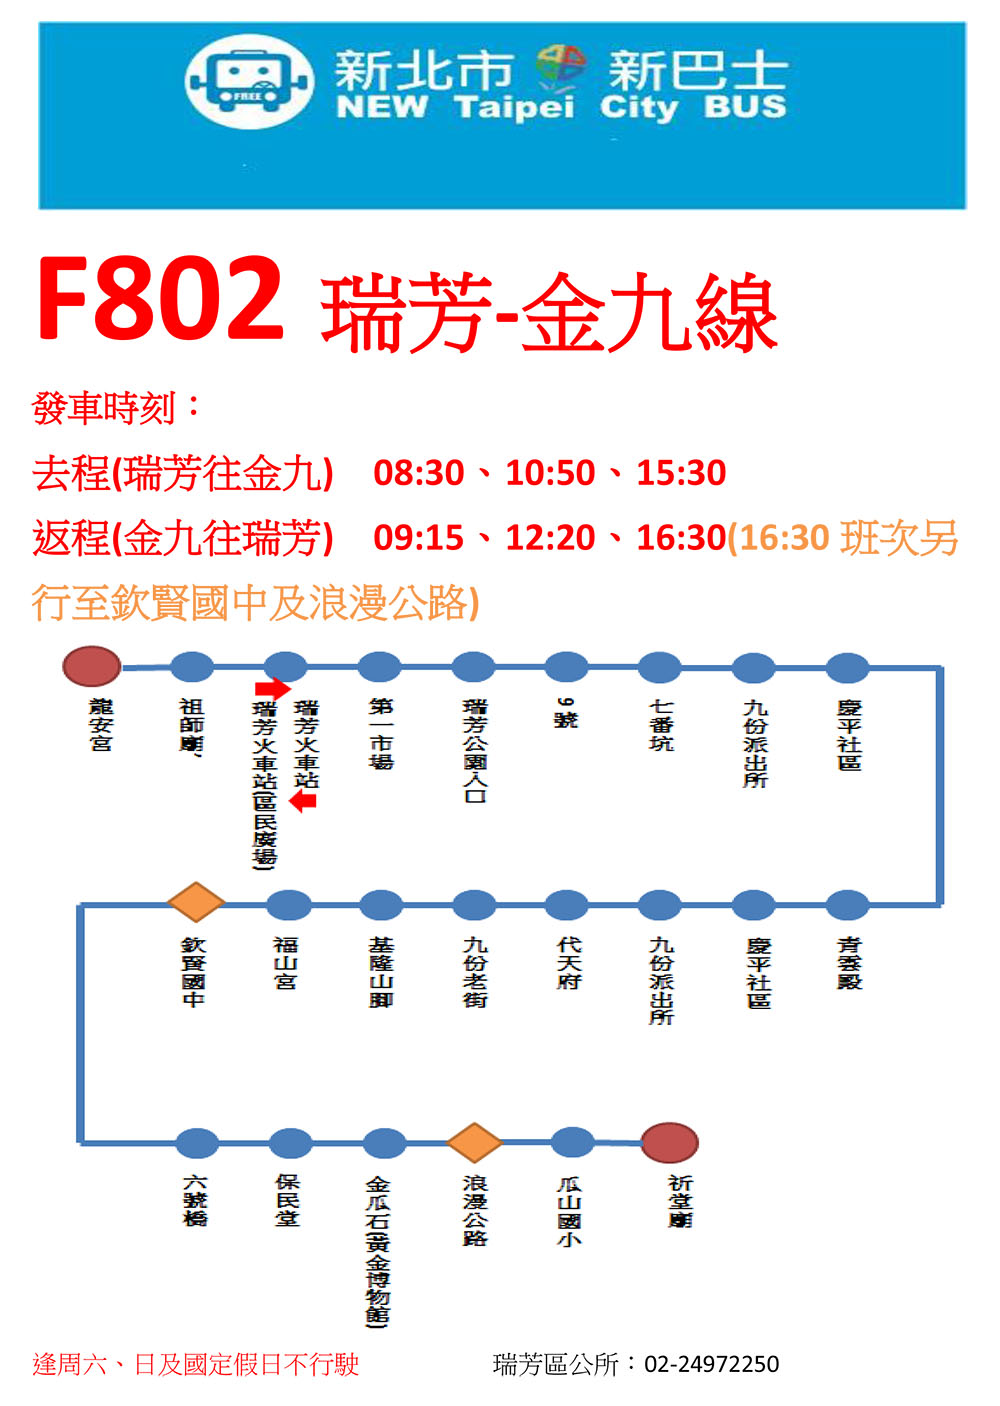 F802瑞芳-金九路線